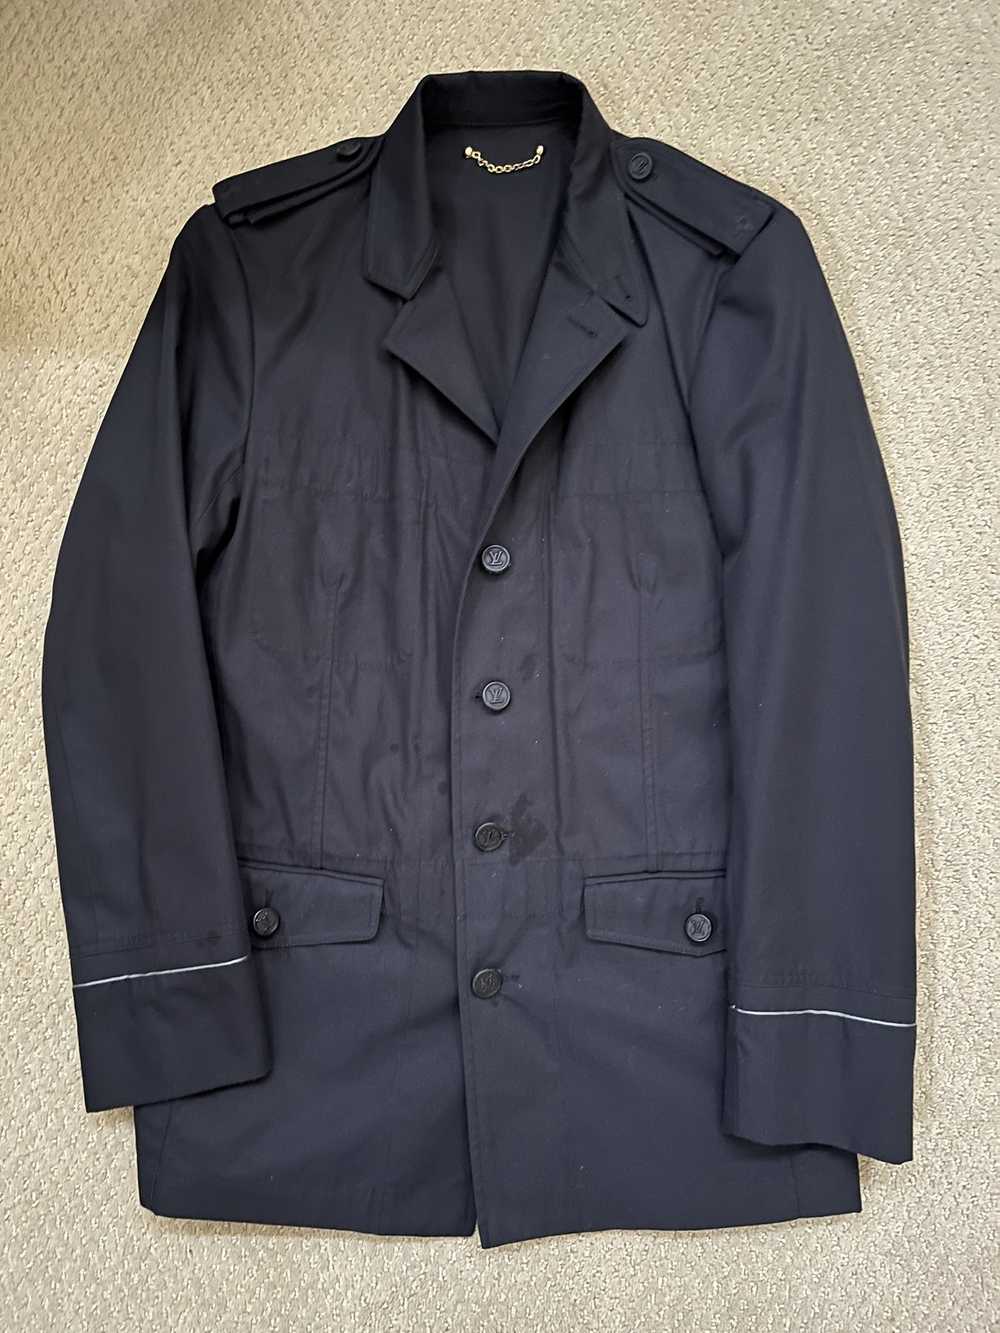 Authentic Louis Vuitton Uniform blazer tailor black 3/4 sleeves size 34  x-small